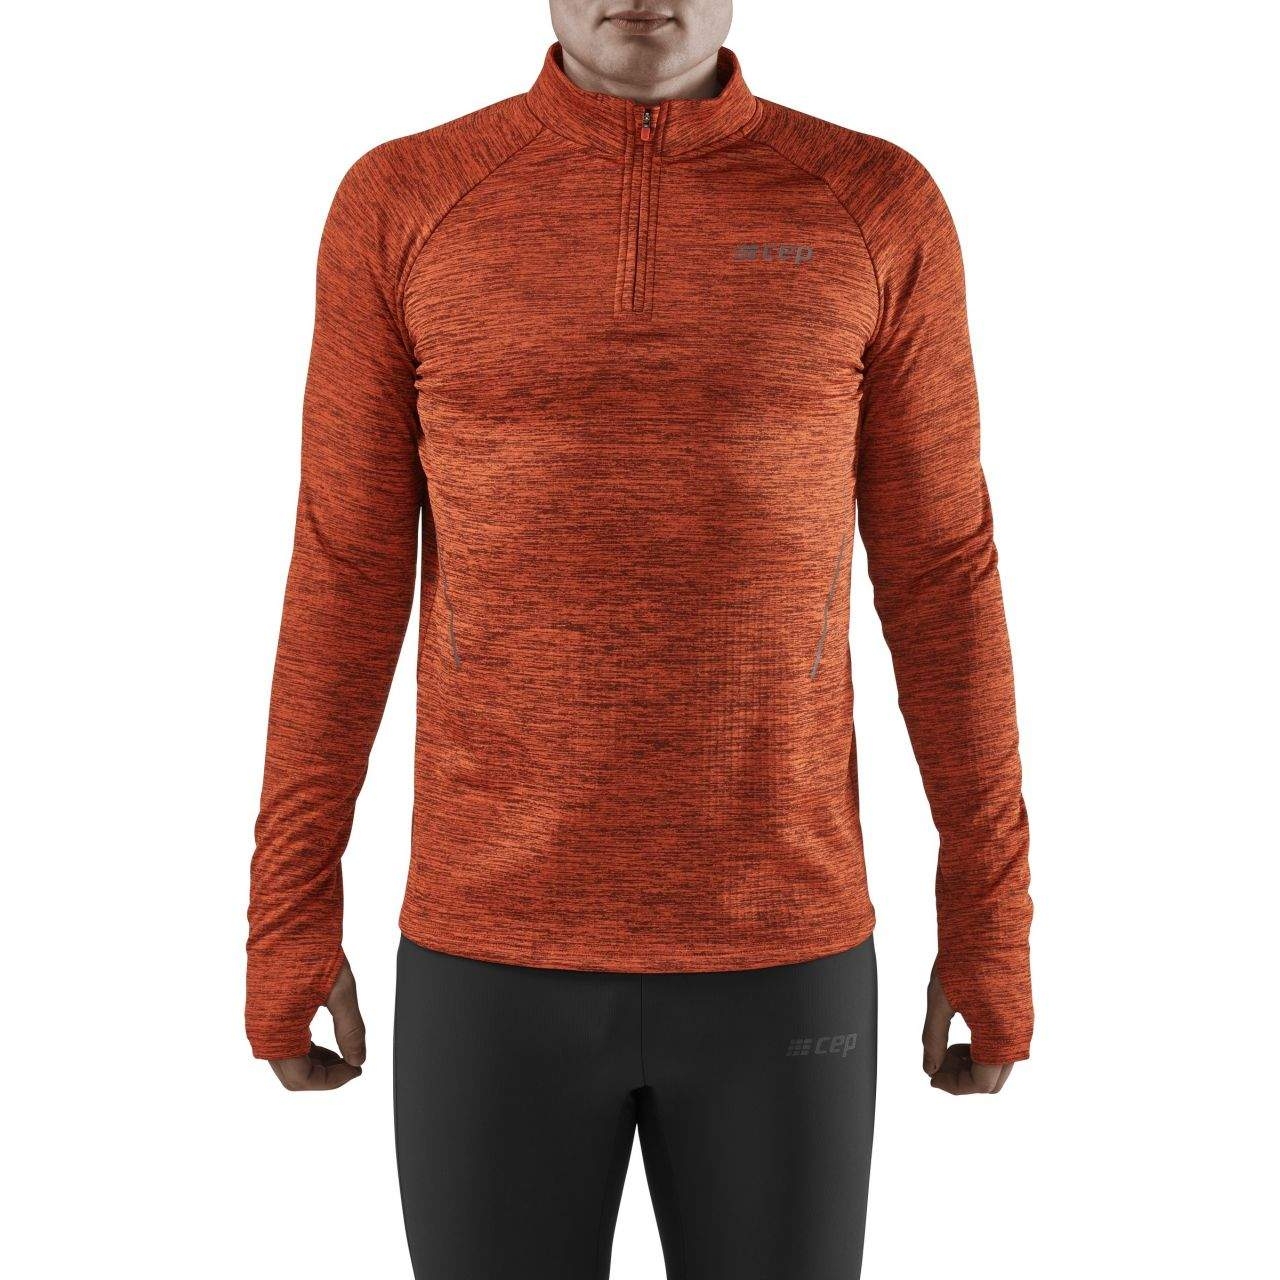 Productfoto van CEP Winter Run Shirt met Lange Mouwen - dark orange melange